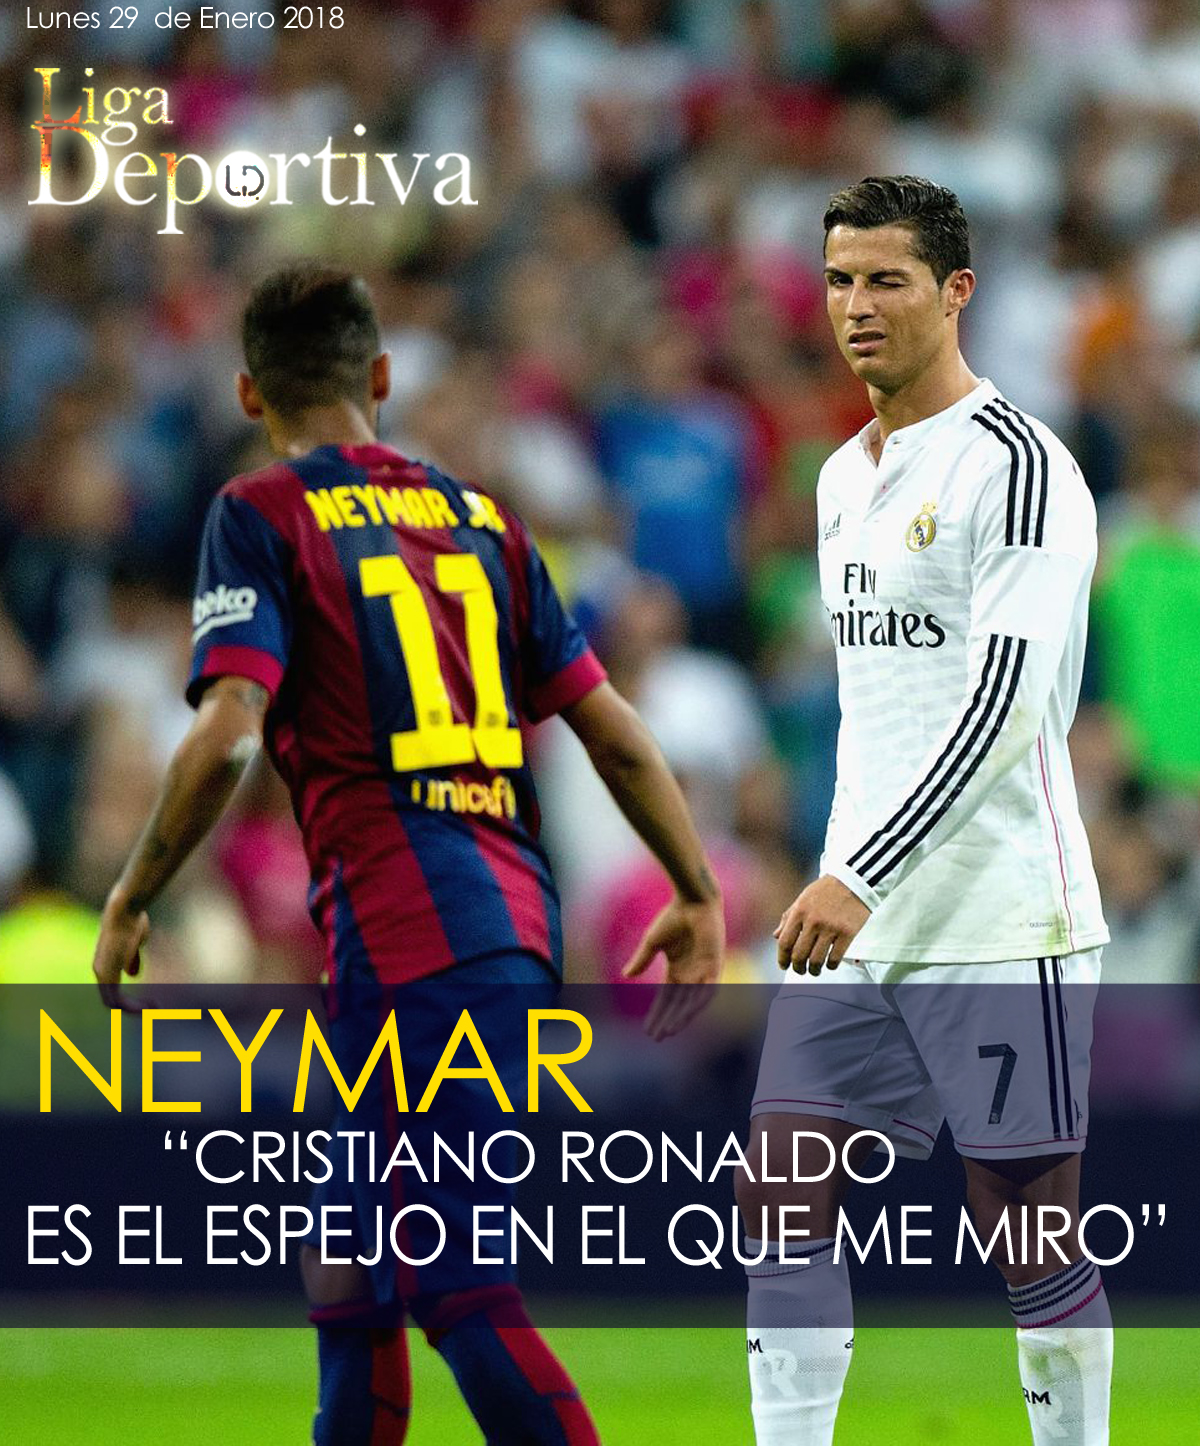 Neymar: "Cristiano Ronaldo es el espejo en el que me miro" 